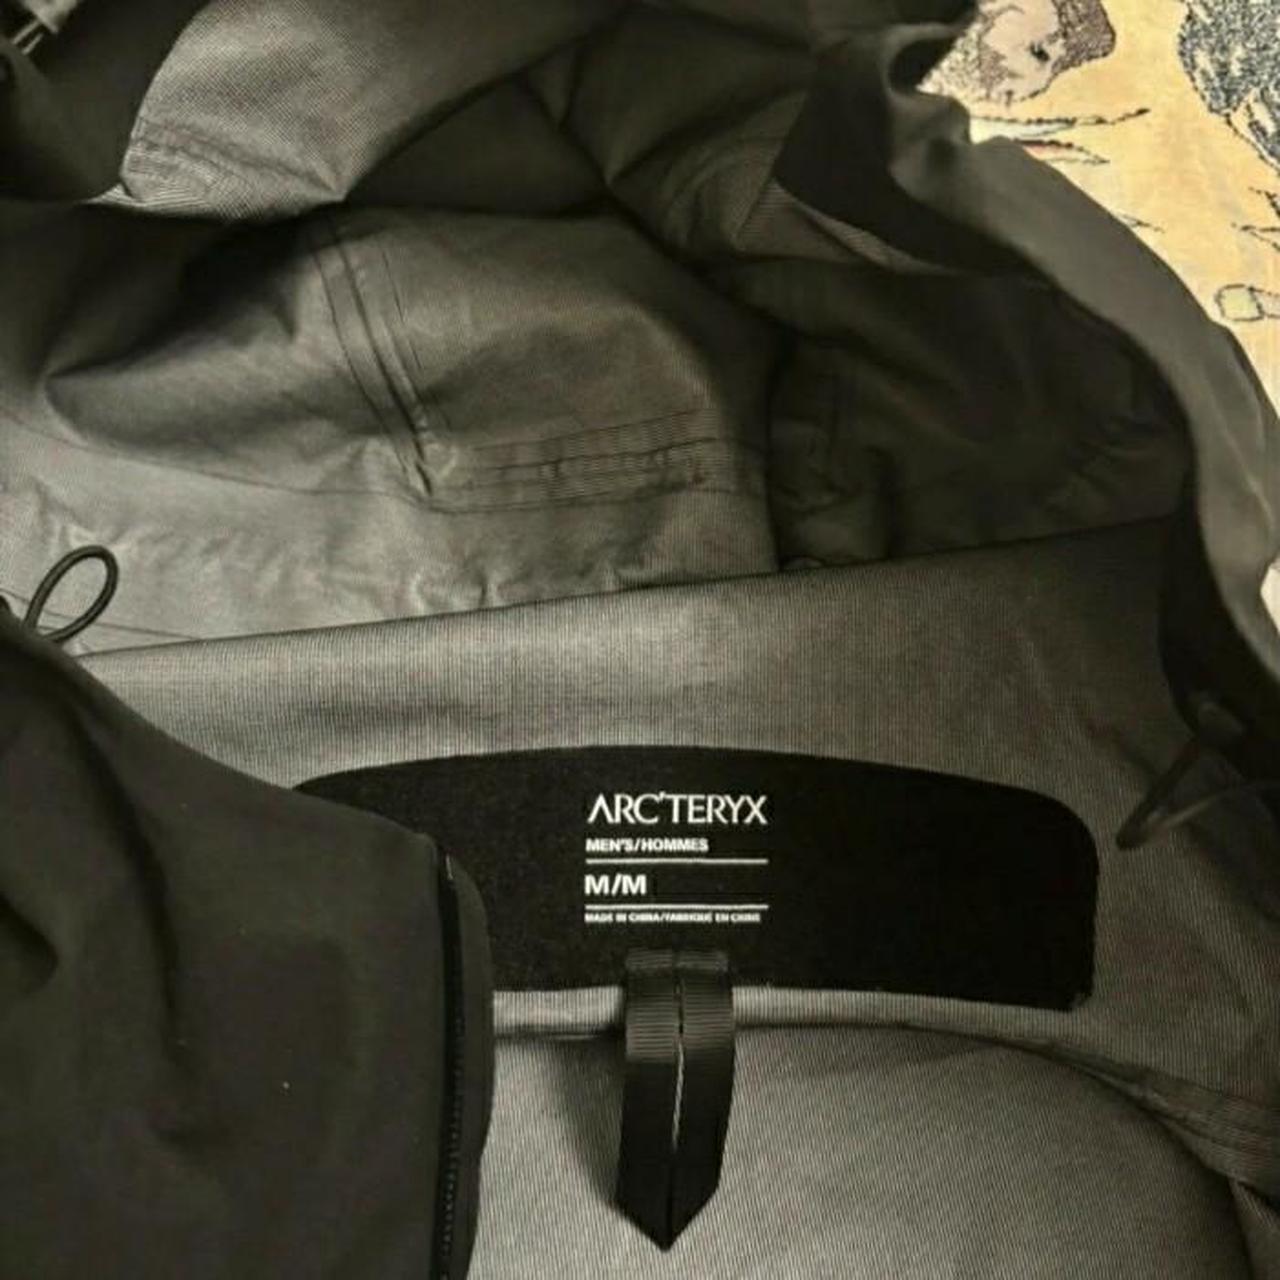 Arc'teryx light gortex jacket - Depop